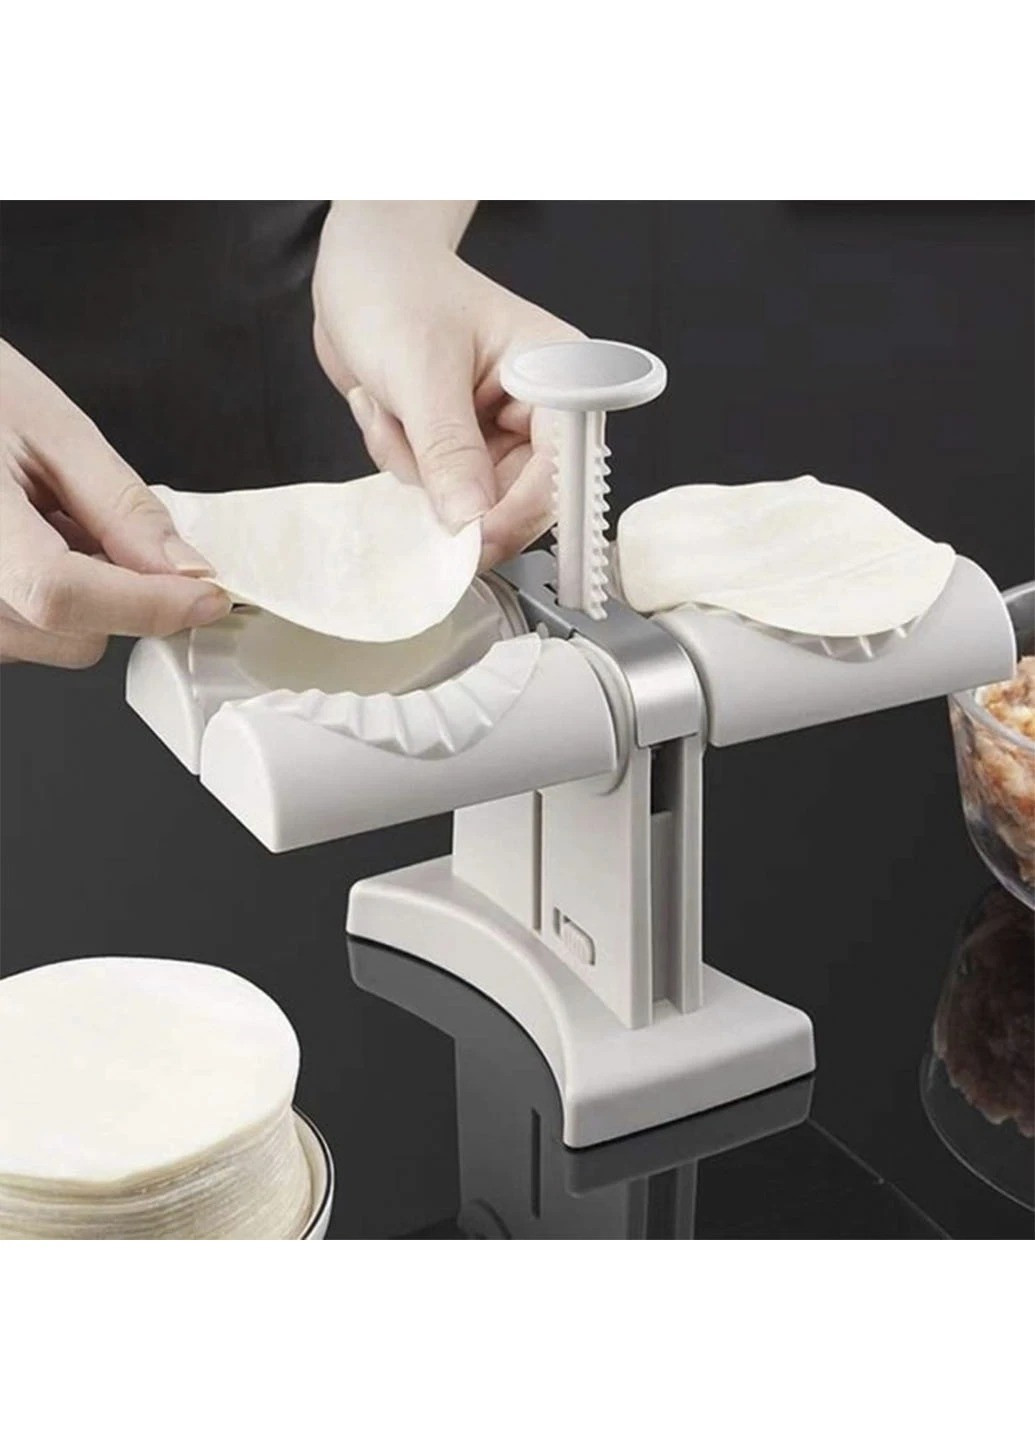 Машинка для лепки вареников и пельменей Пресс форма для изготовления вареников Good Idea ma-24 (259885553)